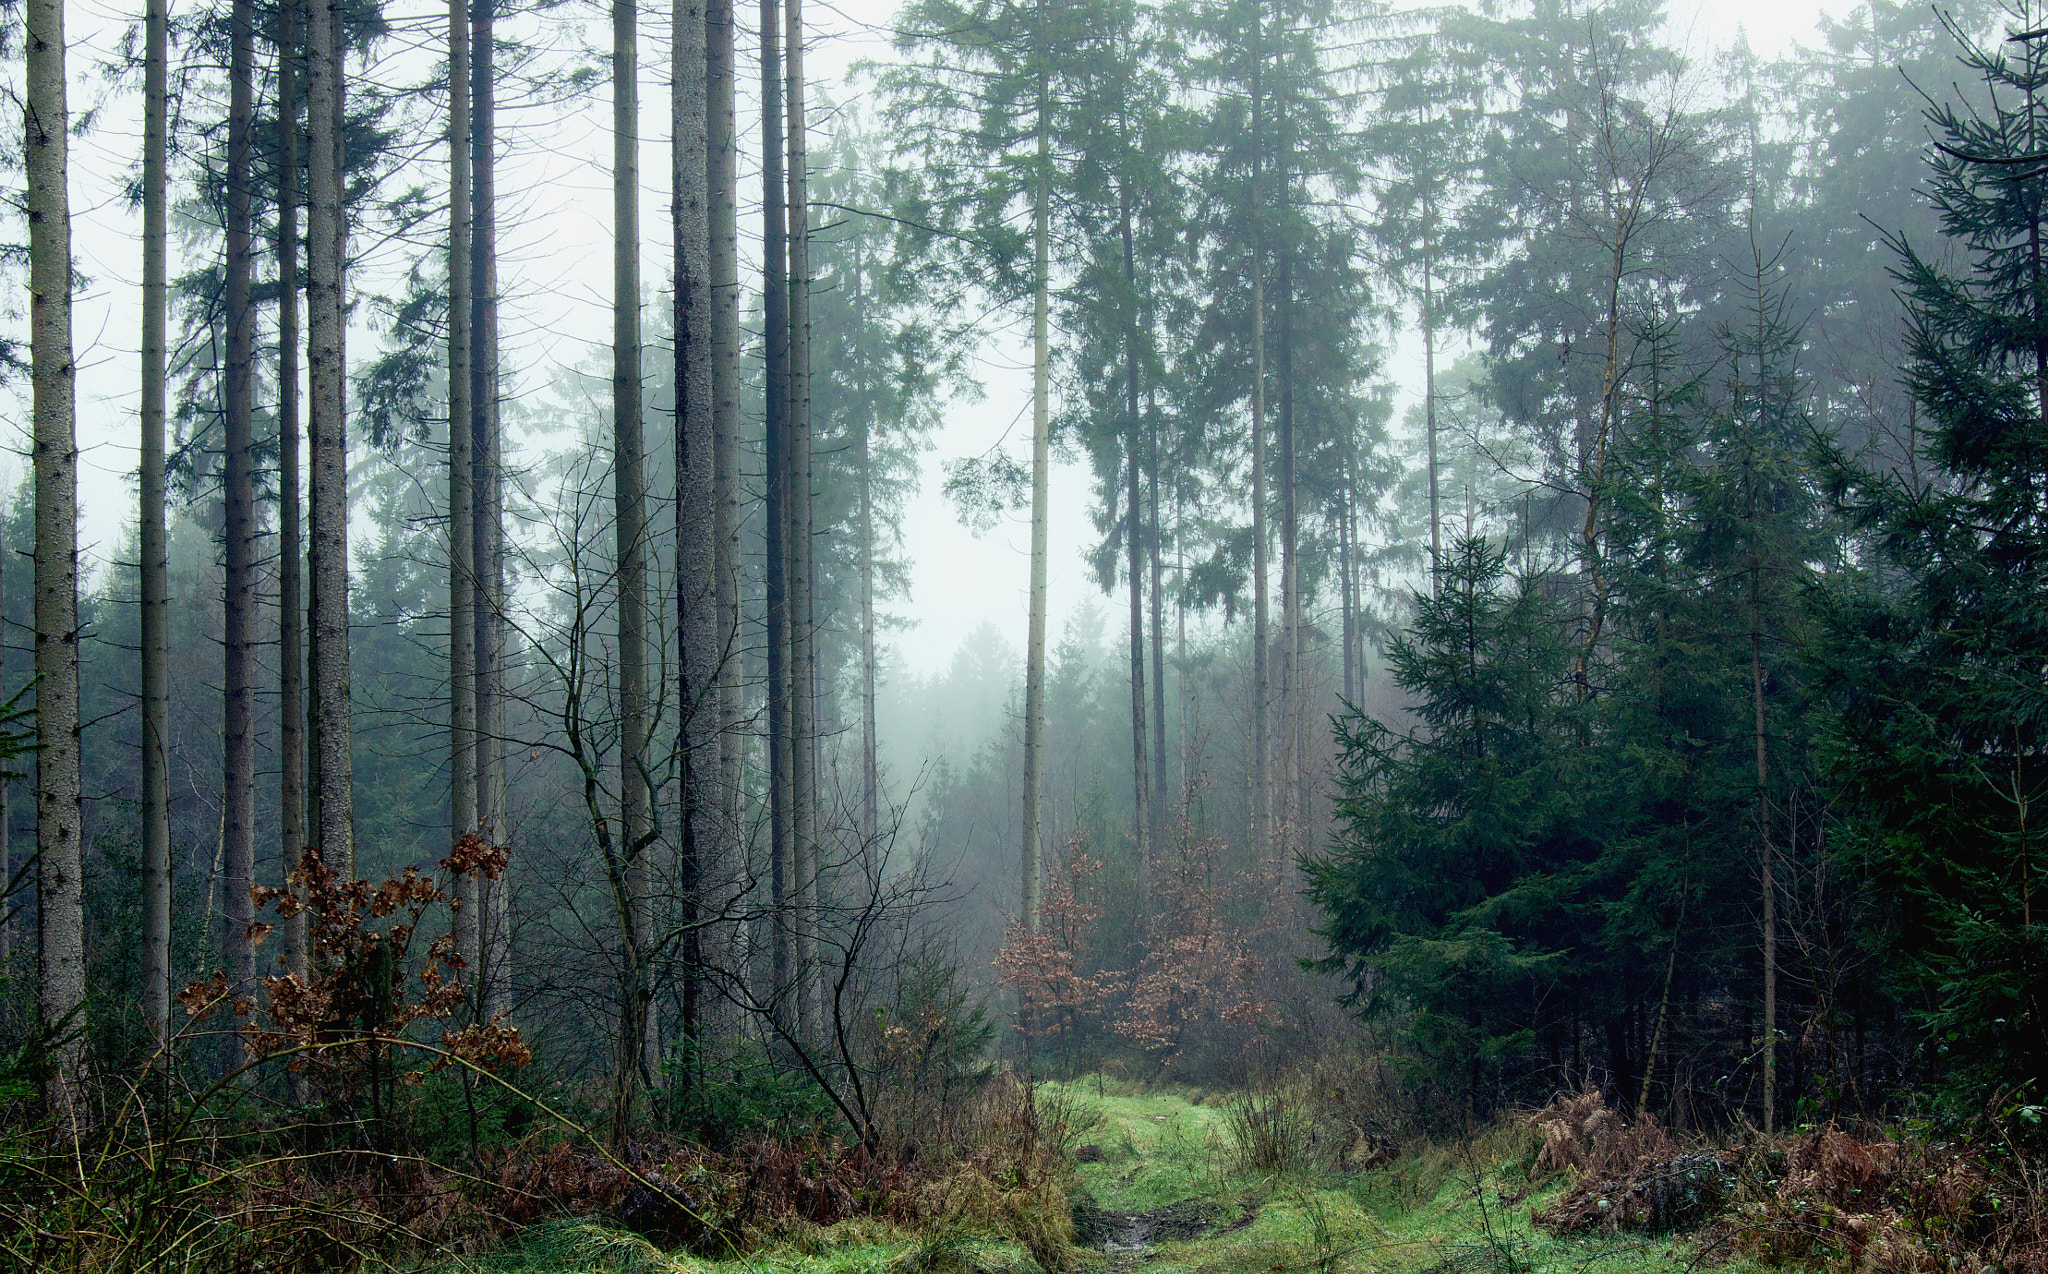 Sony Alpha DSLR-A580 sample photo. Foggy forest photography